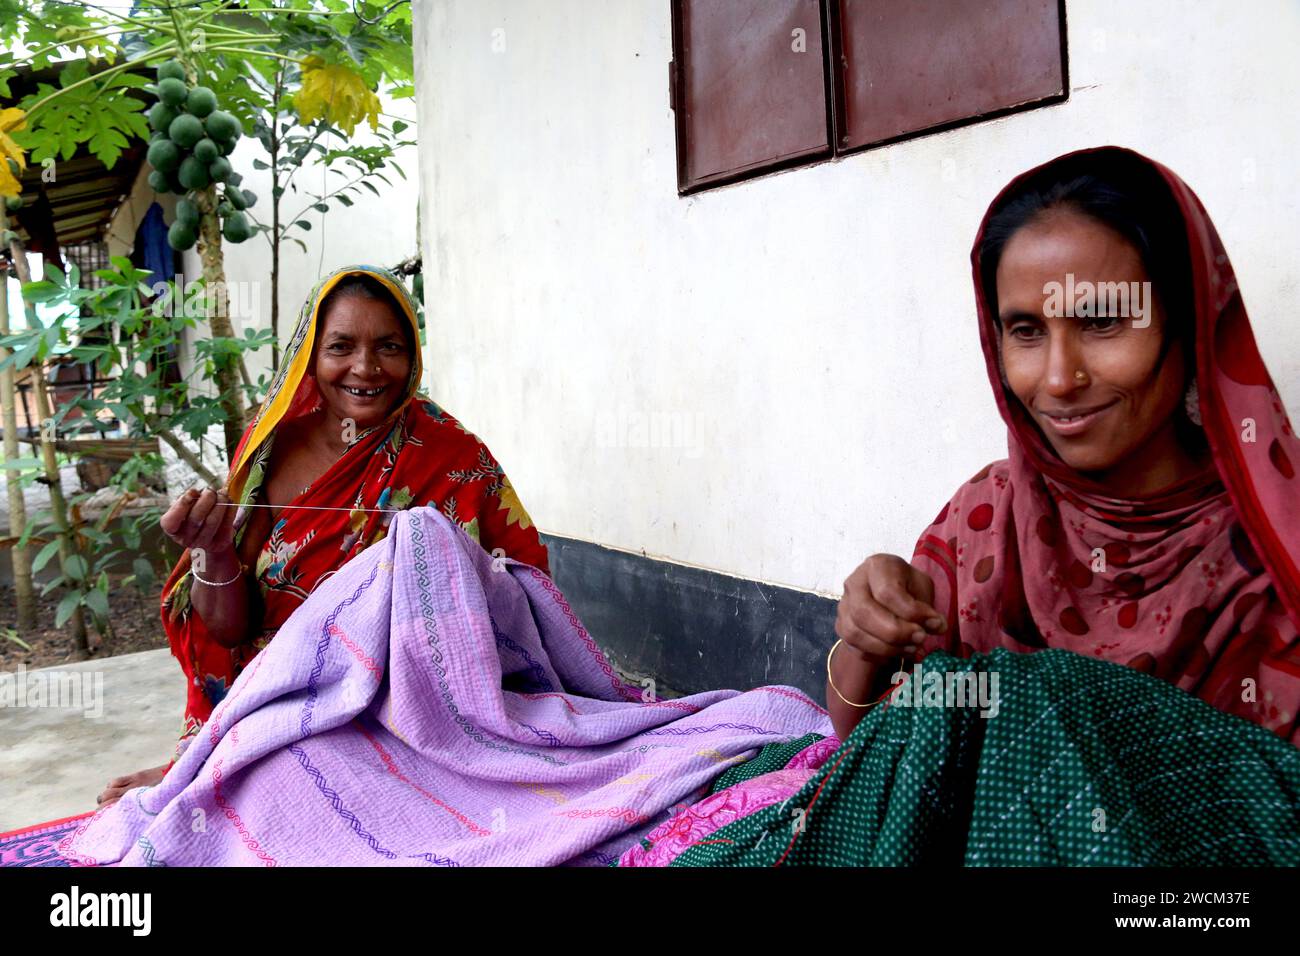 Donne rurali del Bangladesh che cuciscono e ricamano lenzuola, cuscini, tappeti, tovaglie e altri oggetti per la casa, che sono il loro sostentamento. Gucchogram, Jhinaigati, Sherpur. Bangladesh. Foto Stock